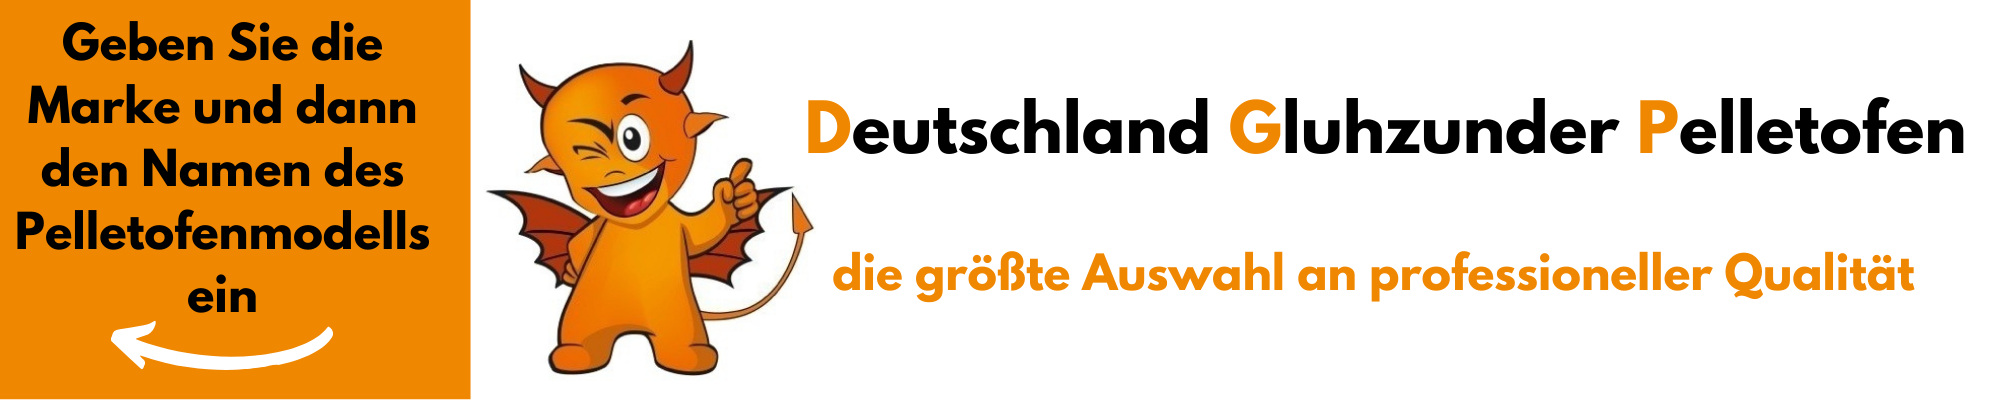 www.deutschland-gluhzunder-pelletofen.de